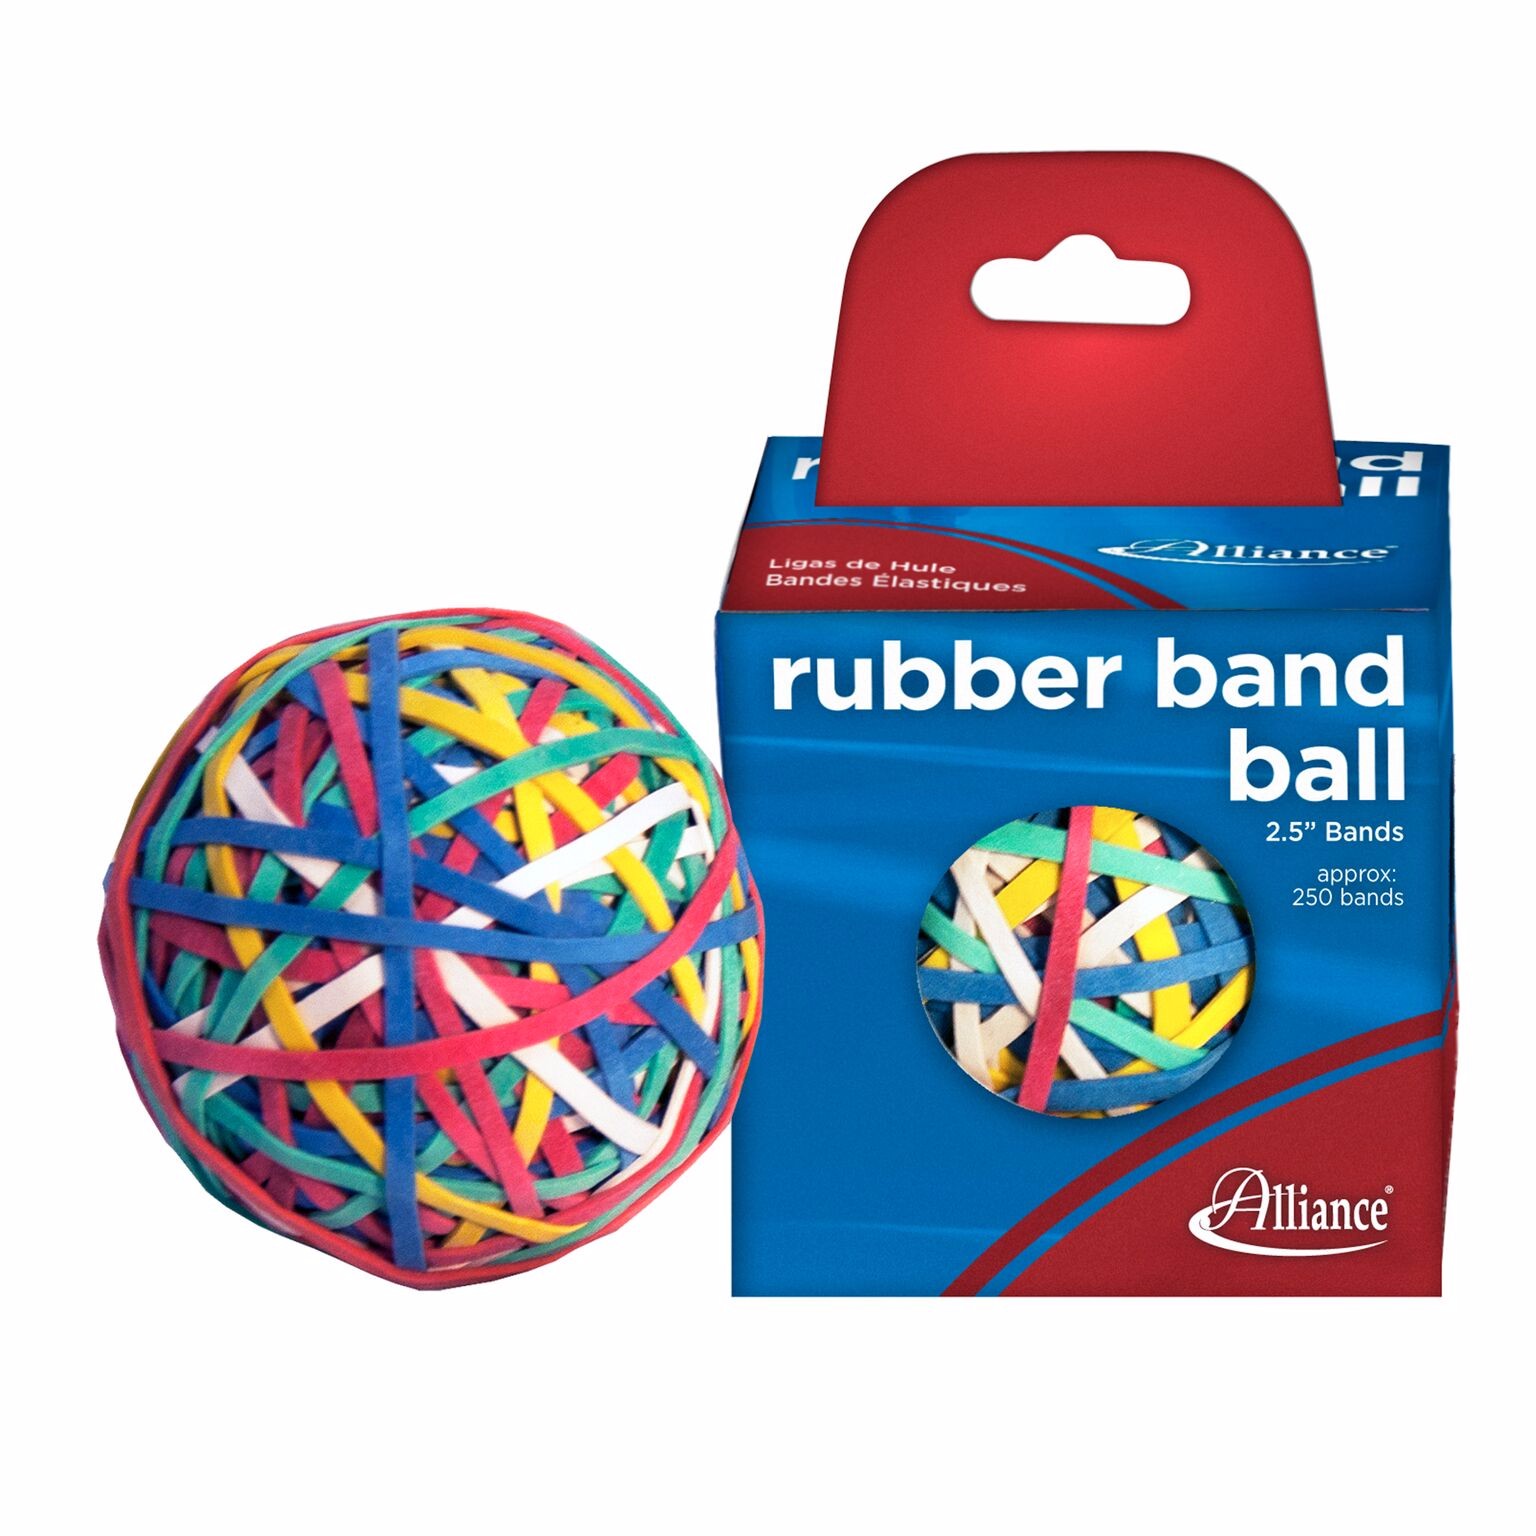 Dick play rubber band balls belt